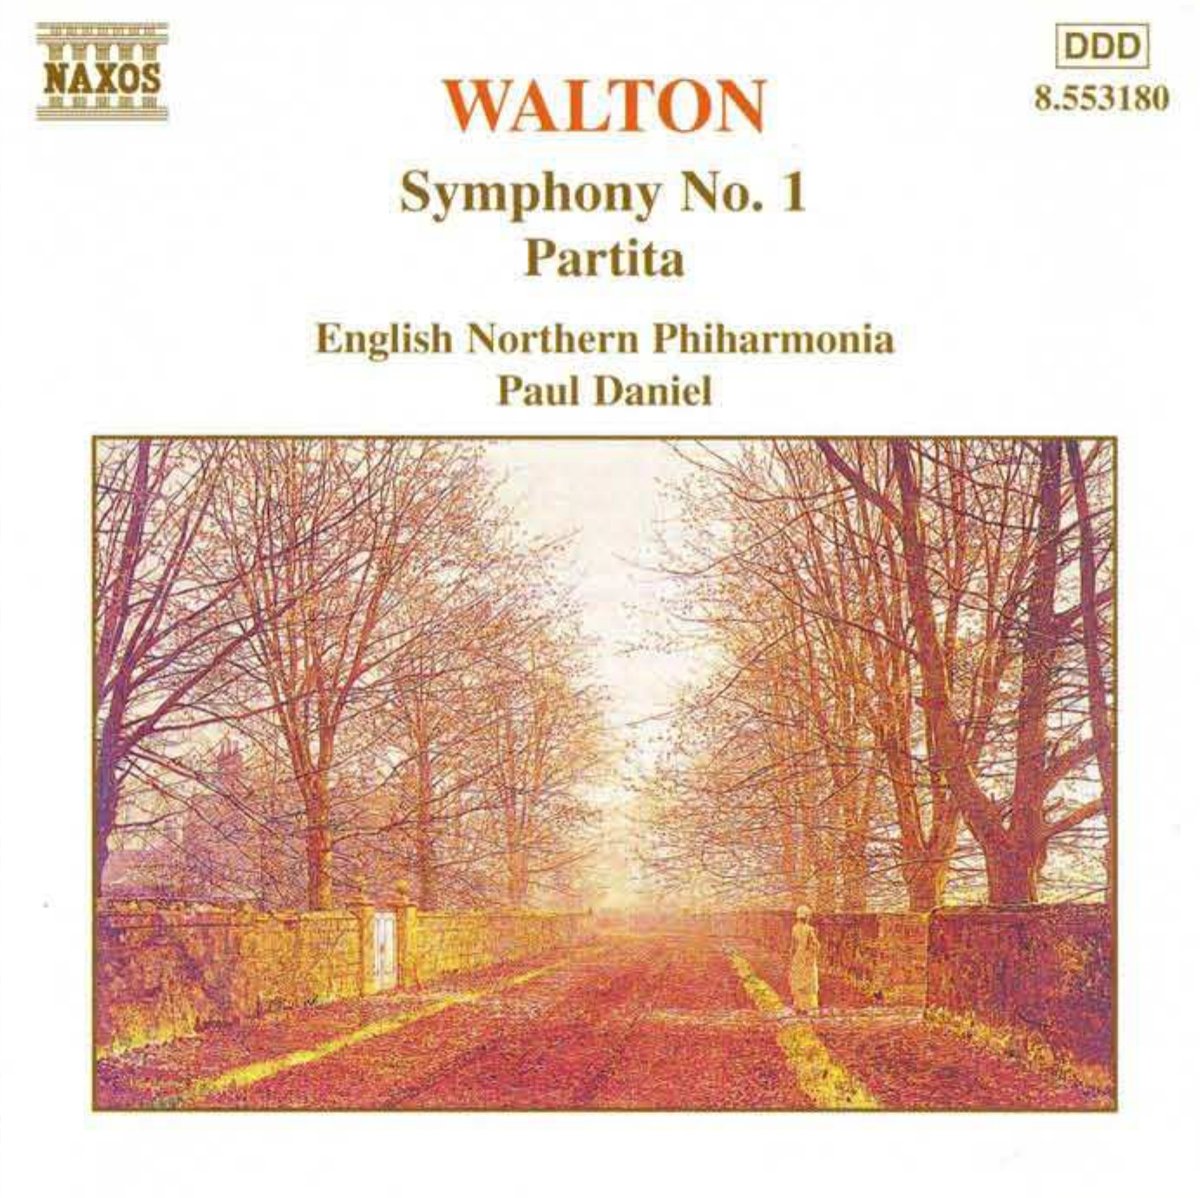 WALTON: Symphony no. 1